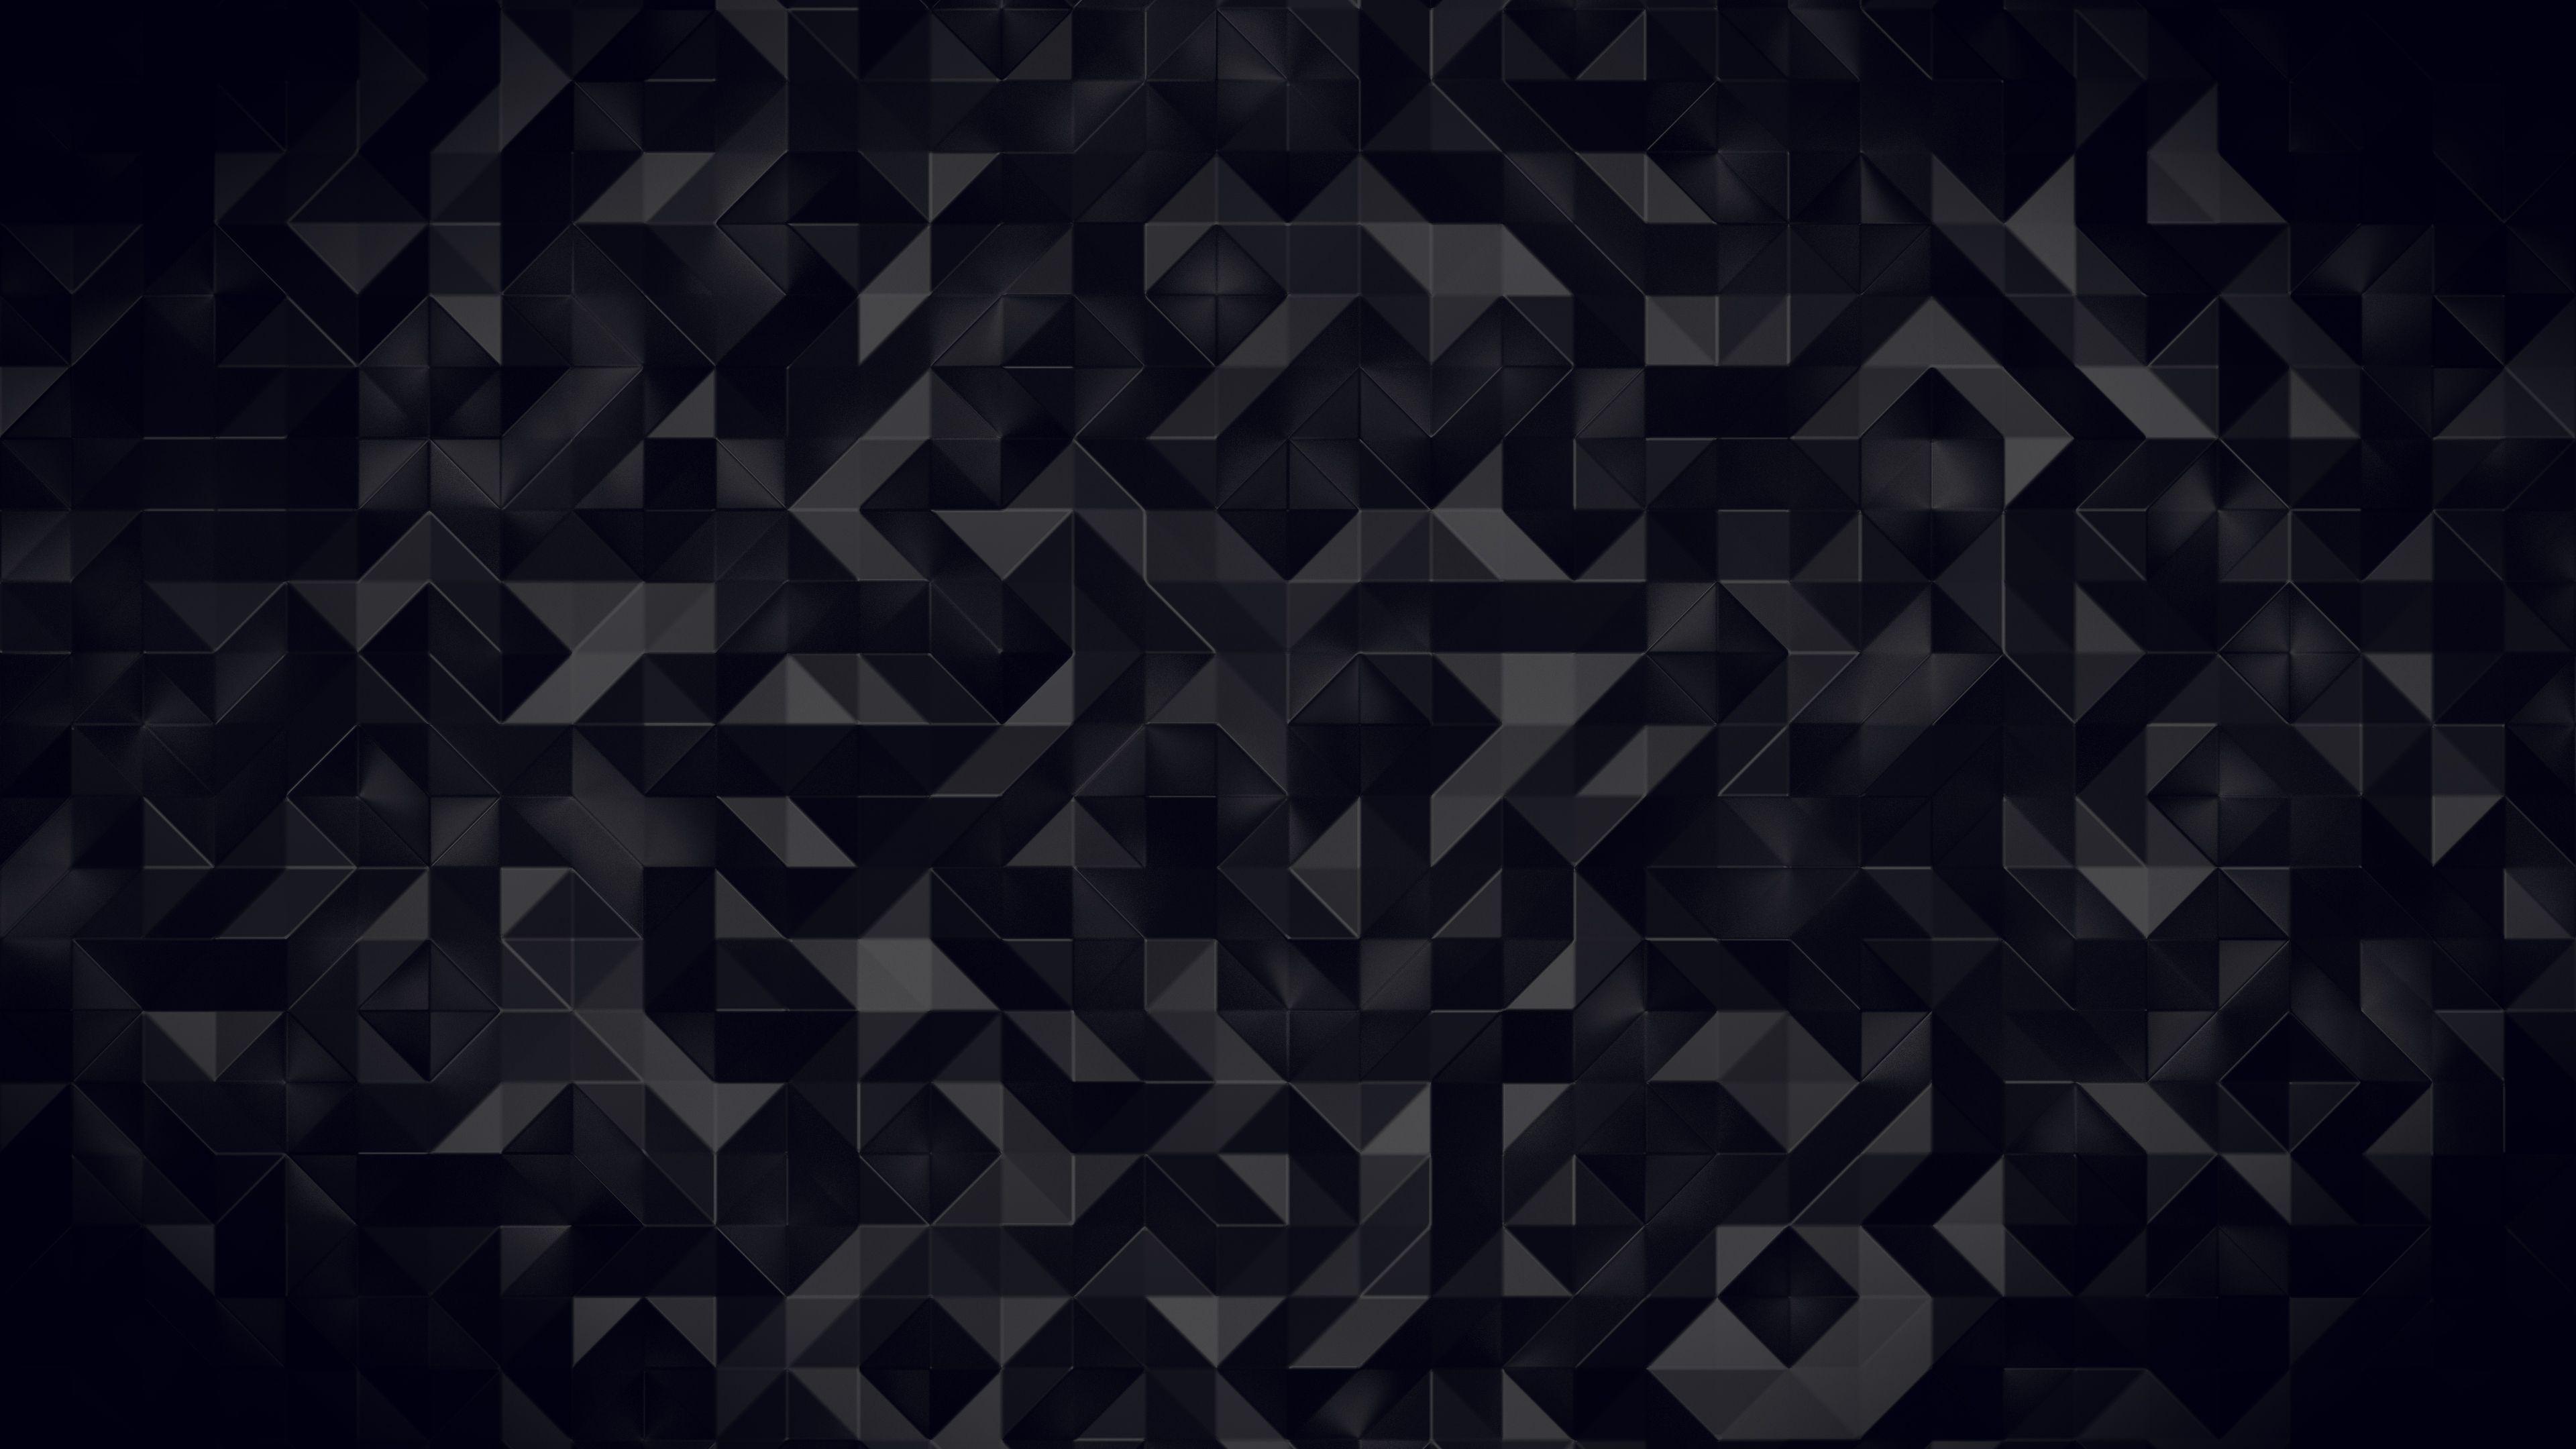 Dark 4K Wallpapers - Top Free Dark 4K Backgrounds ...